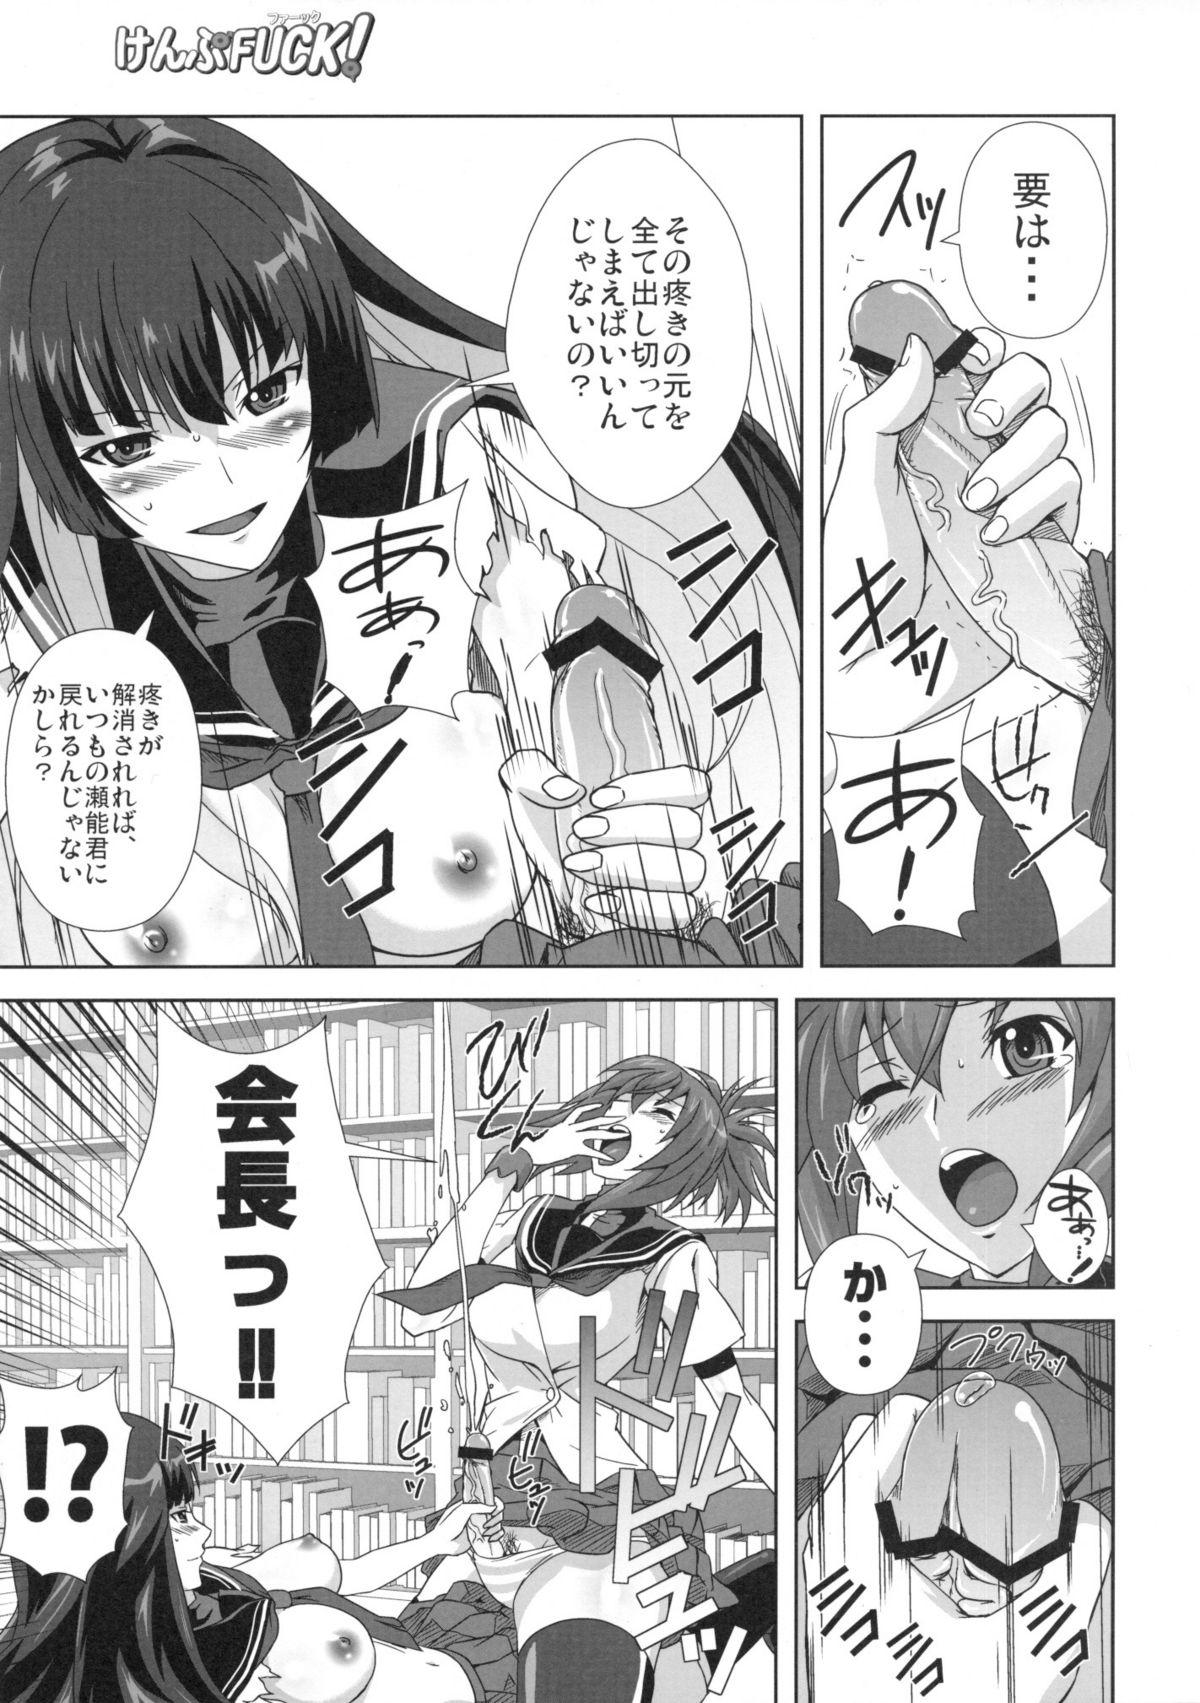 Bunduda KampFUCK! - Kampfer Japan - Page 6